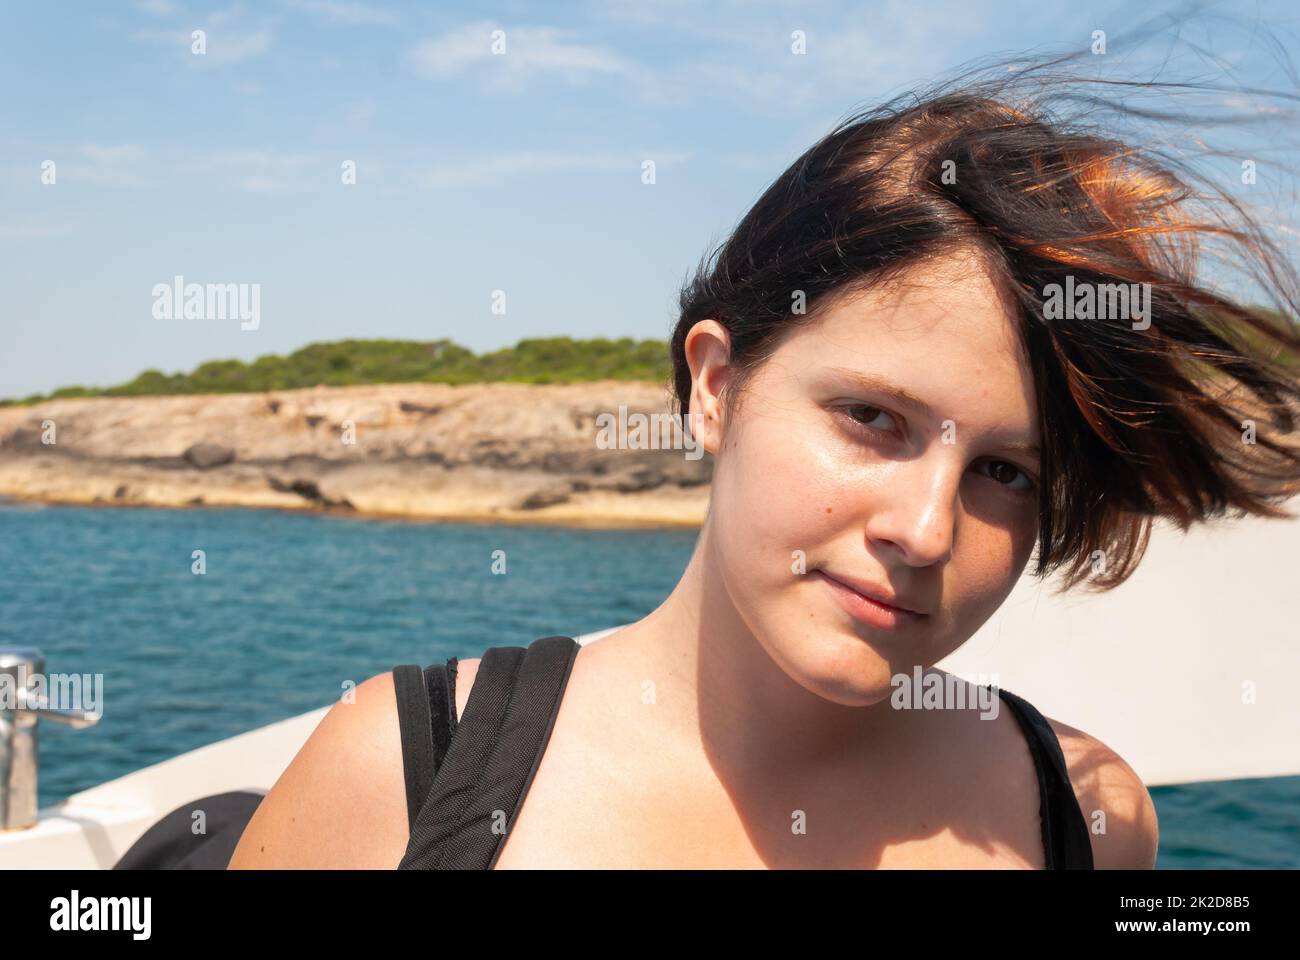 Donna con capelli neri arancioni che guarda la macchina fotografica, in piedi su una nave Foto Stock